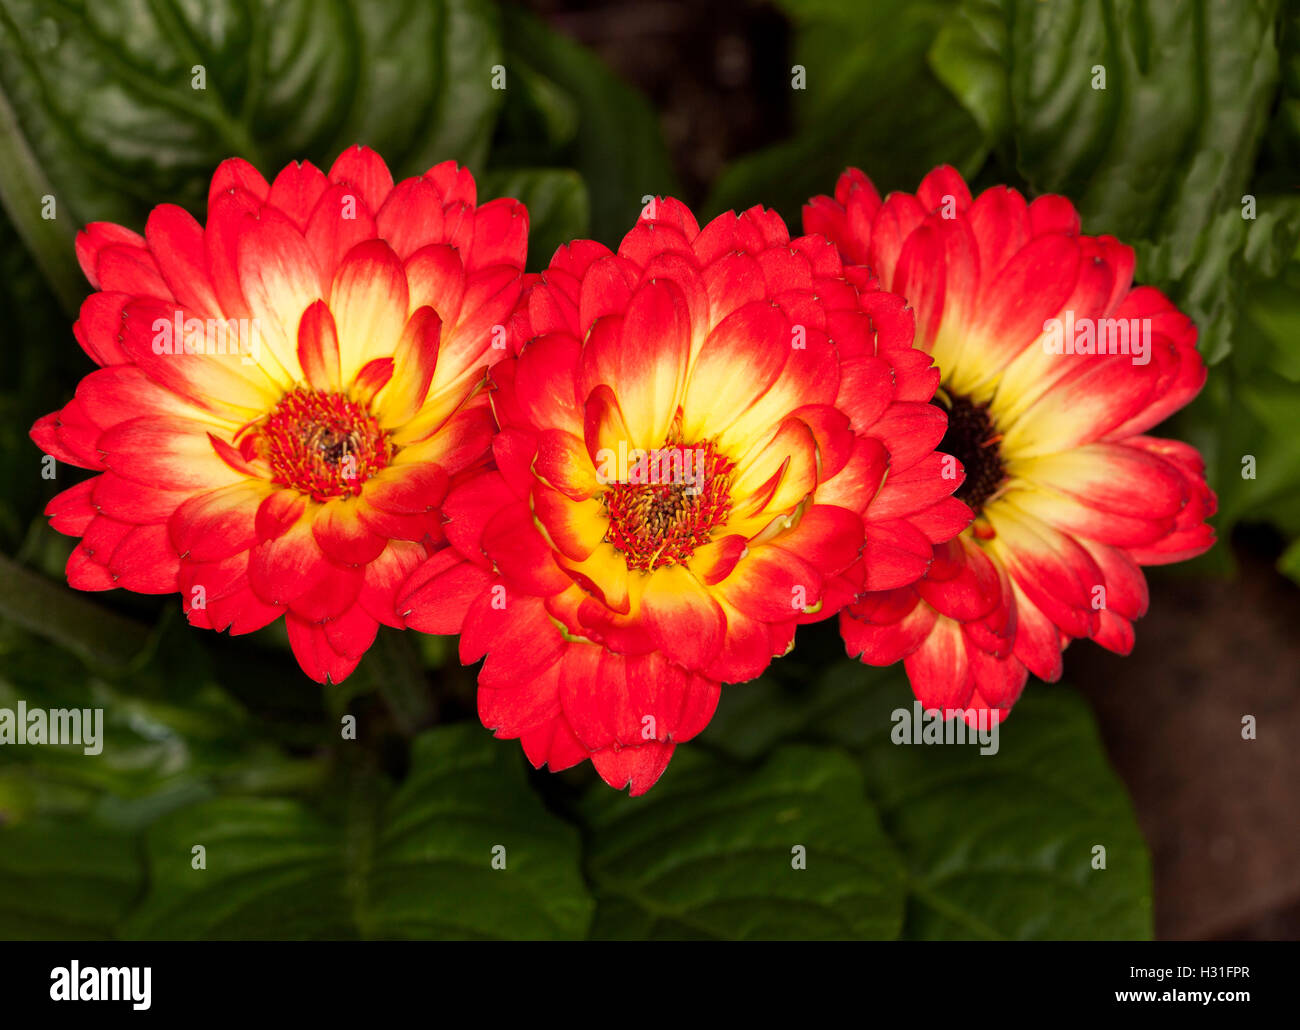 Rangée de trois fleurs spectaculaires de Gerbera jamesonii avec pétales rouge vif, jaune contrastante et centres de feuilles vert foncé Banque D'Images